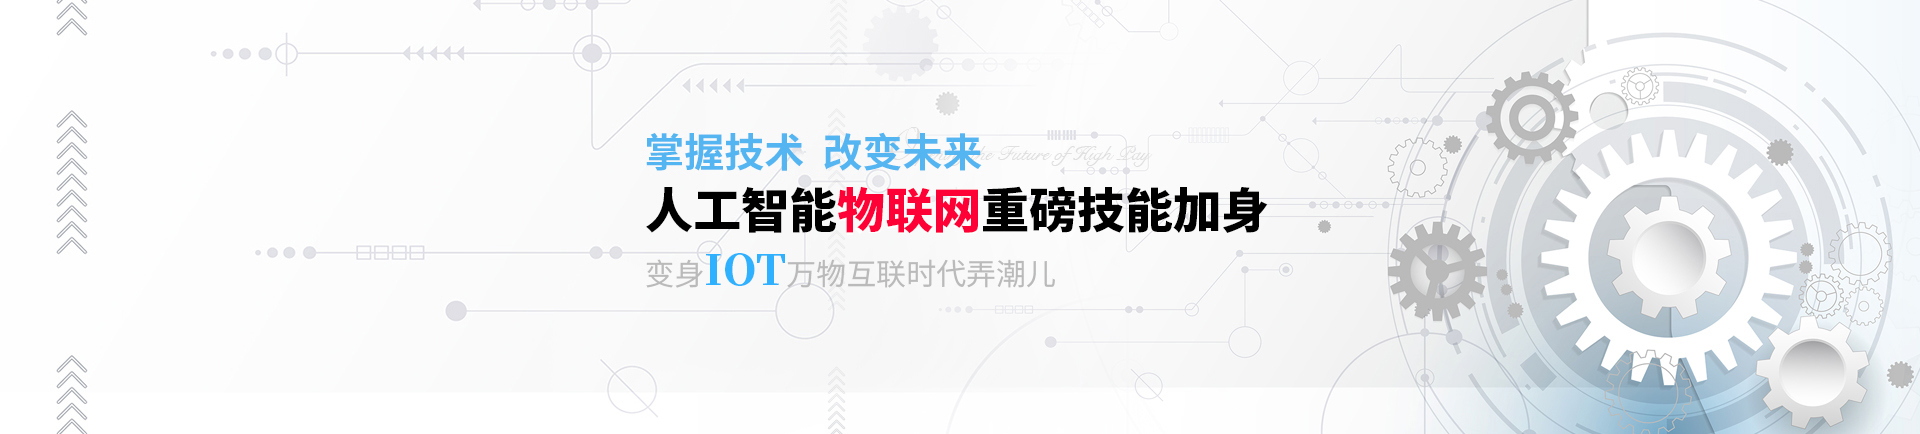 人工智能物联网重磅技能加身 变身IOT万物互联时代弄潮儿-fuzhou